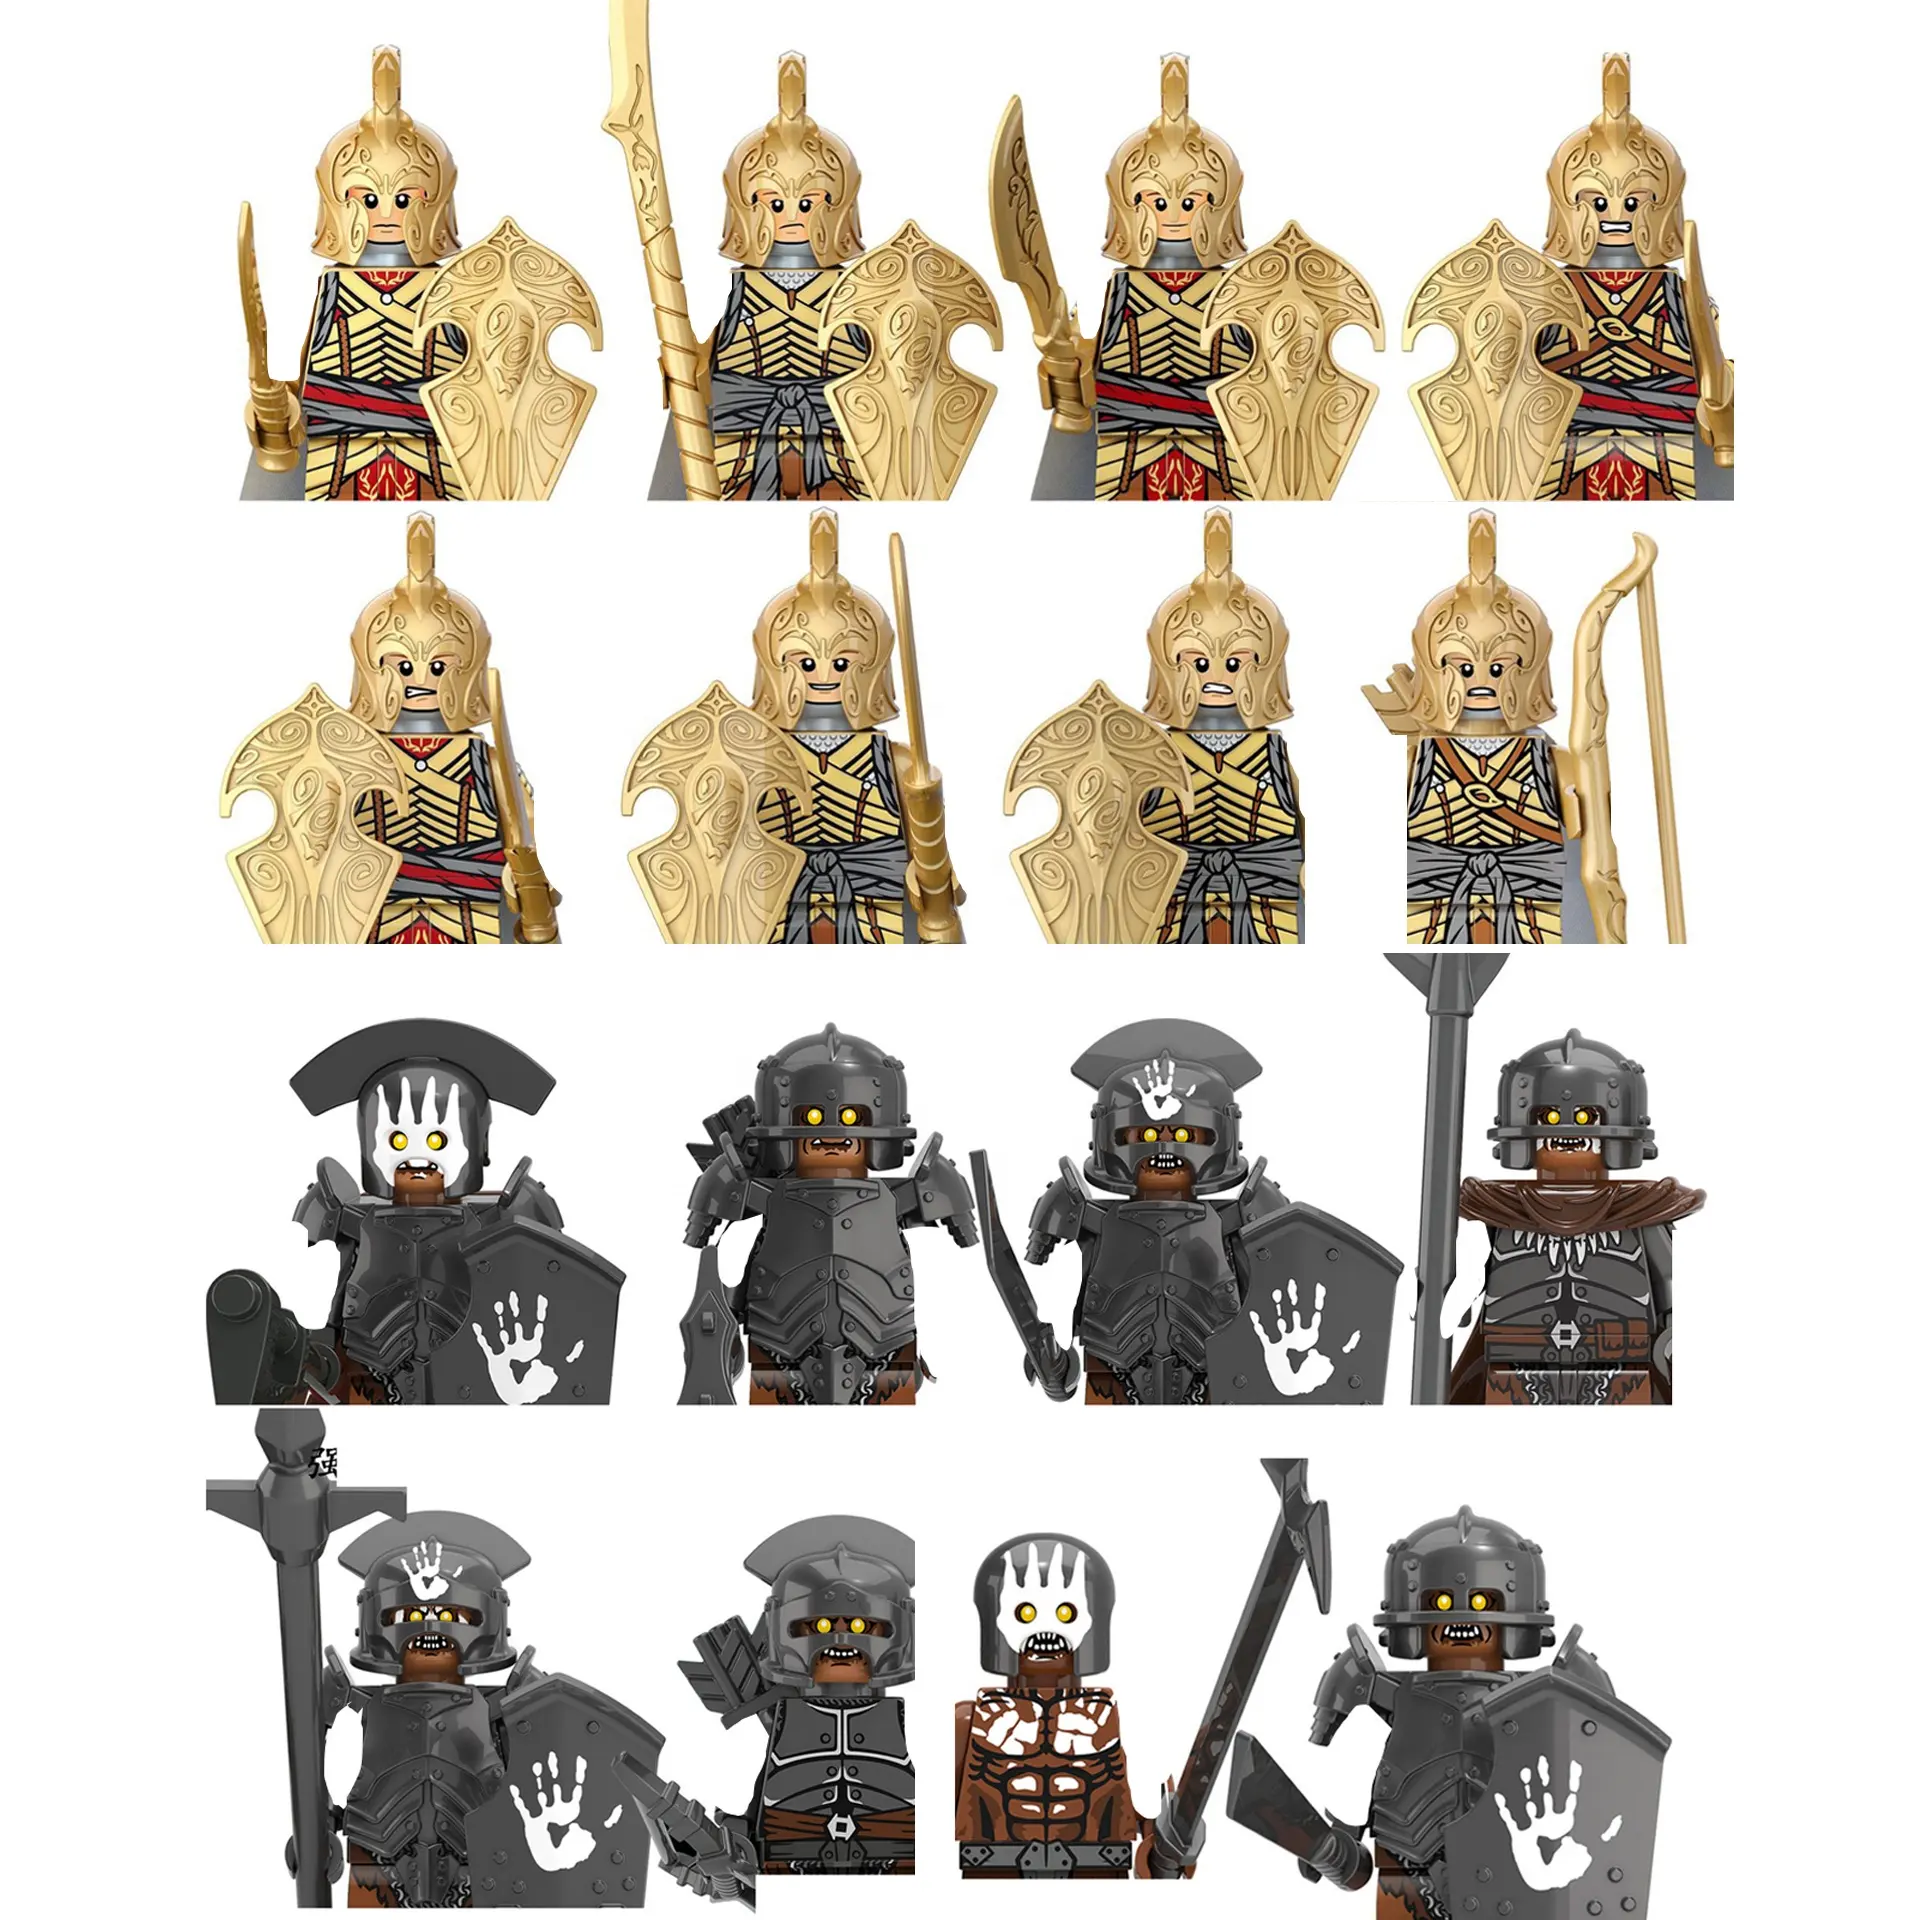 شخصيات عسكرية من القرون الوسطى فرسان جندي ، محارب إلفن أوروك هاي ، كتل بناء صغيرة ، ألعاب تعليمية للأولاد الصغار